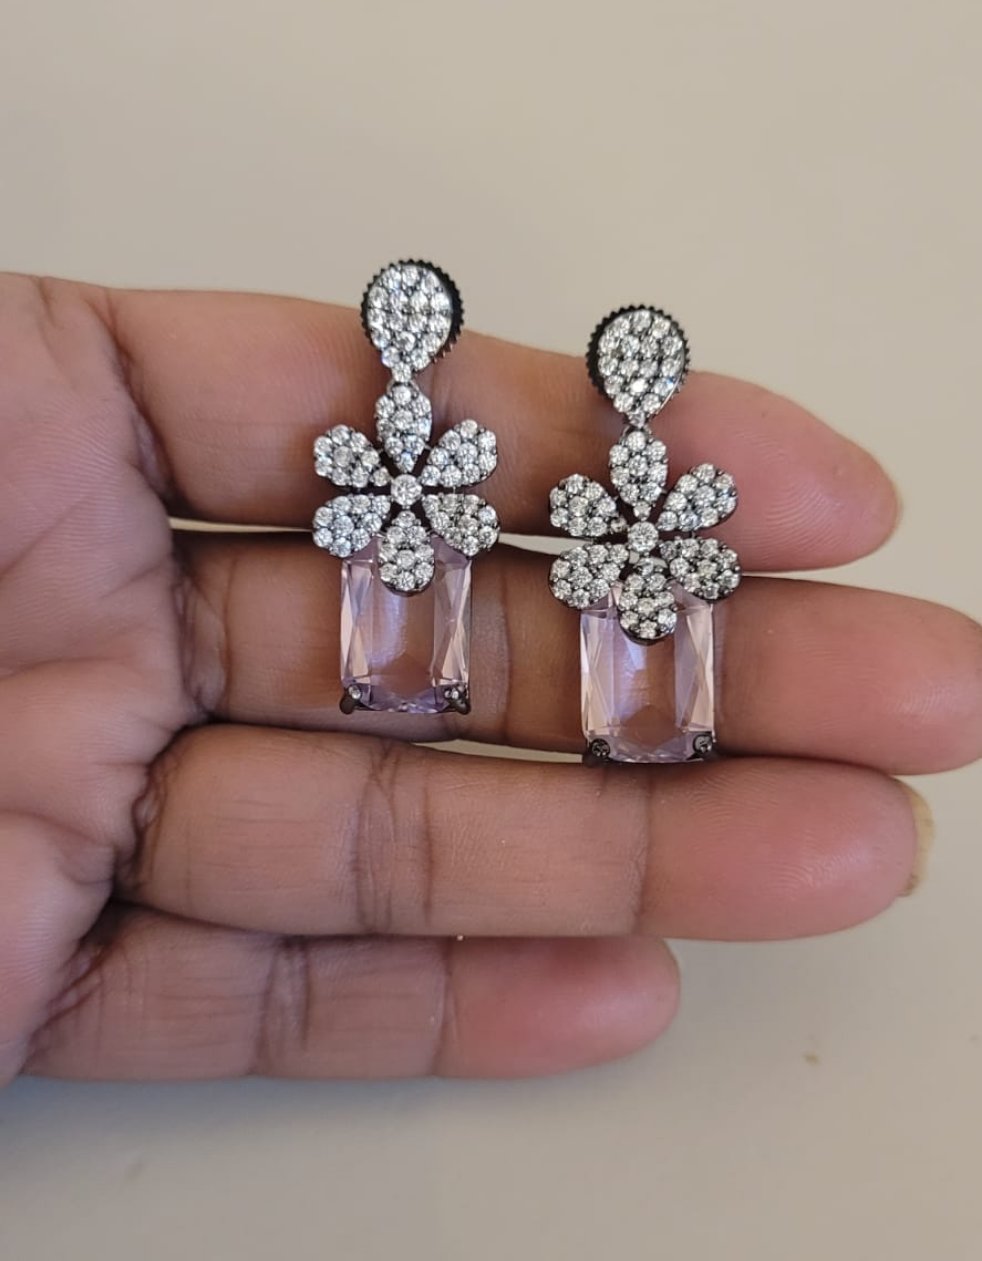 Gemstone Earrings | Buy Gemstone Earrings Online